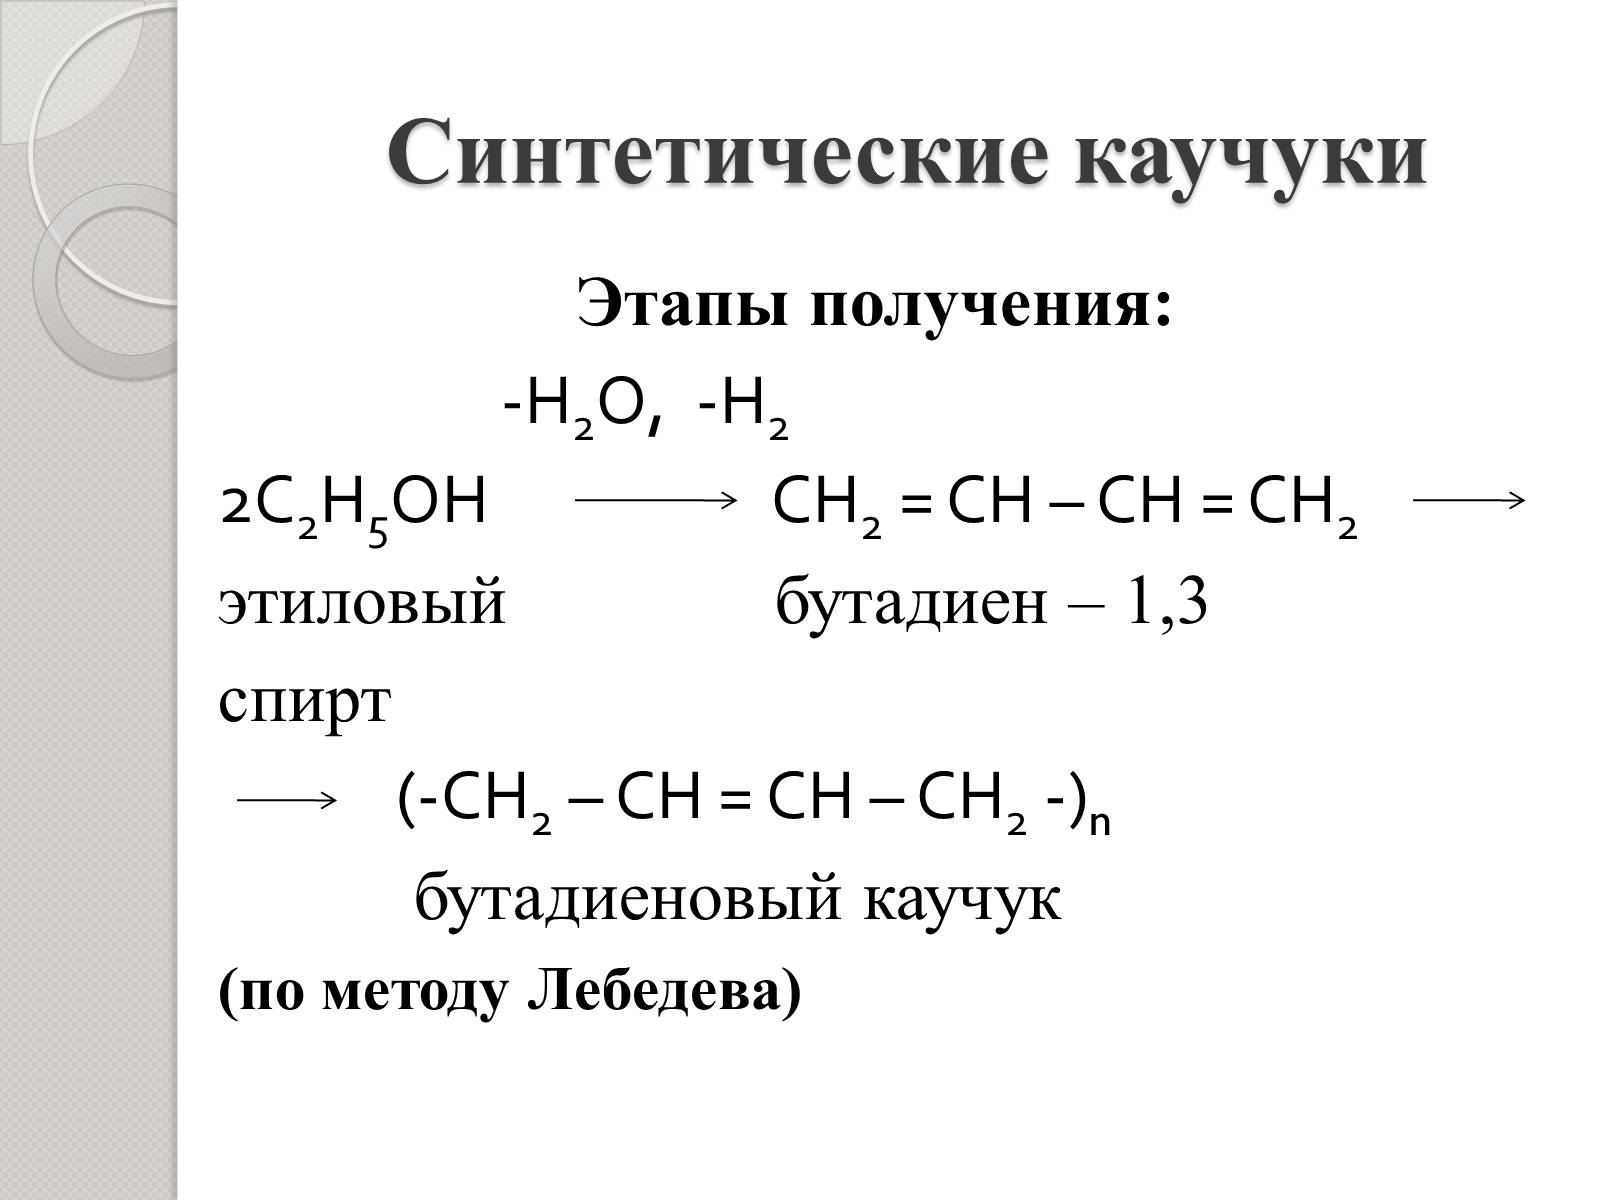 Реакции лебедева получают. Синтетический каучук бутадиеновый формула. Формула Лебедева синтетический каучук. Формула получения синтетического каучука. Реакция получения синтетического каучука.